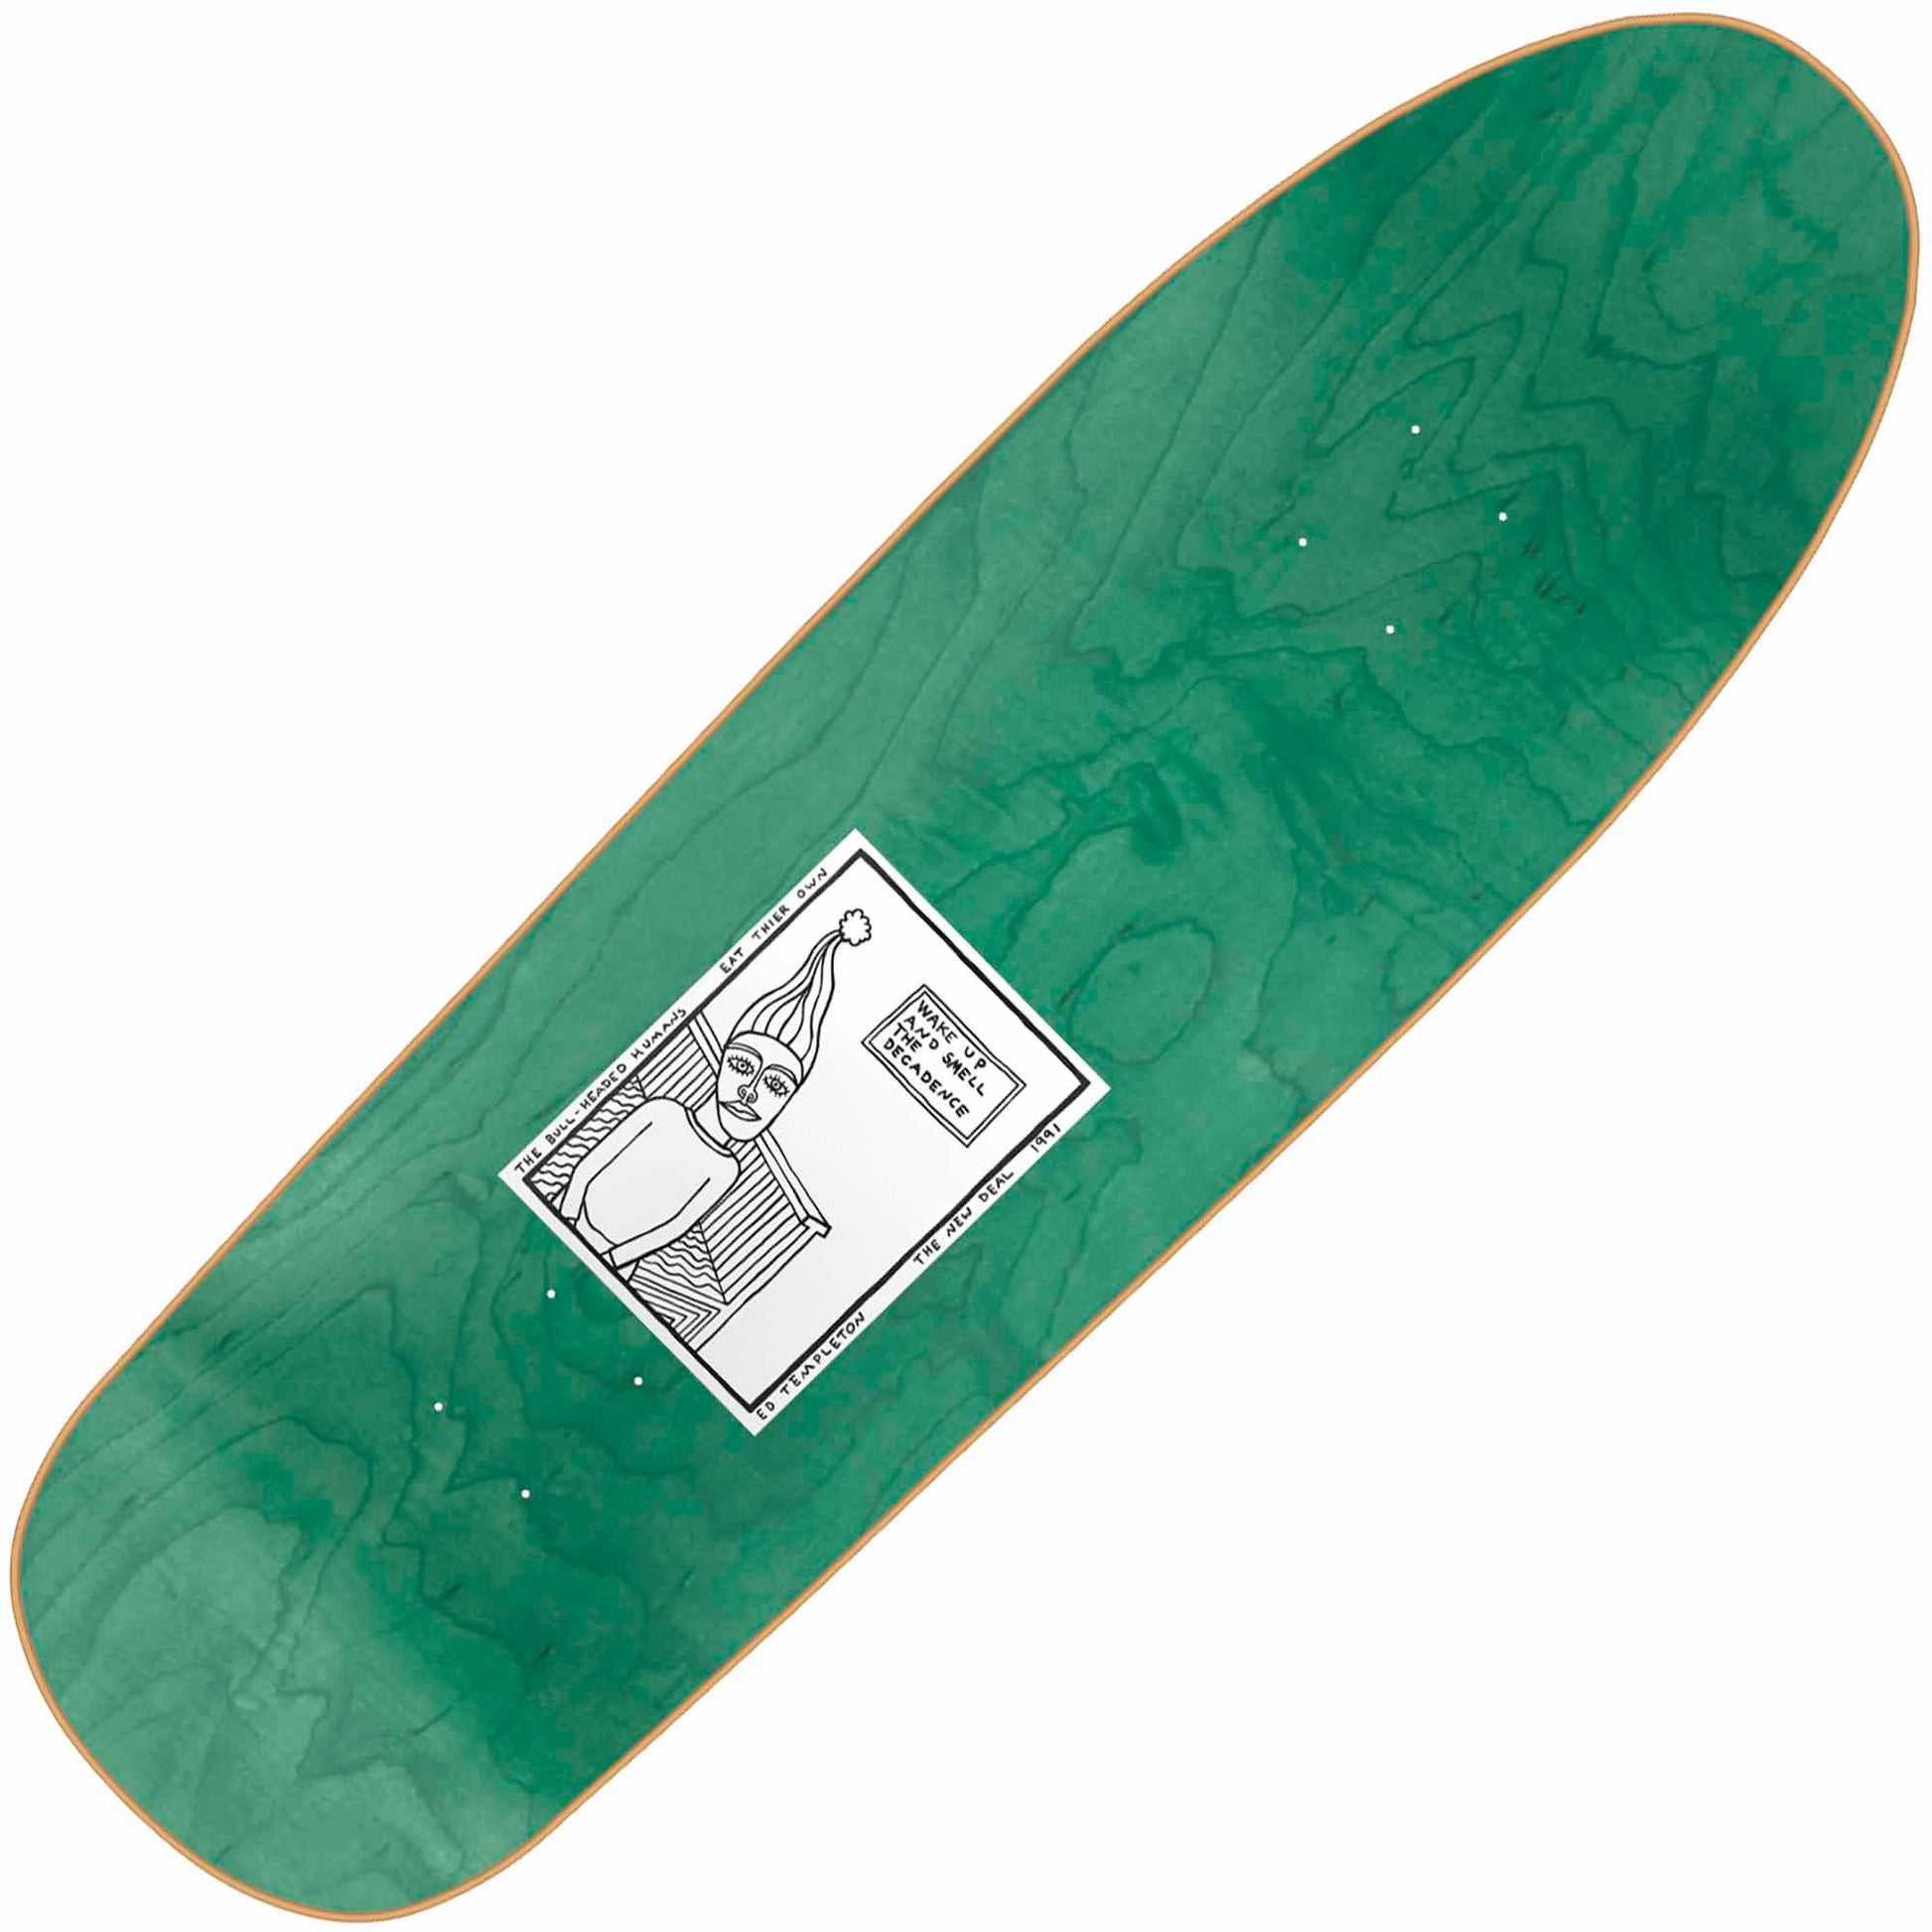 New Deal Templeton Bullman Reissue Deck, Red (9.35") - Tiki Room Skateboards - 2